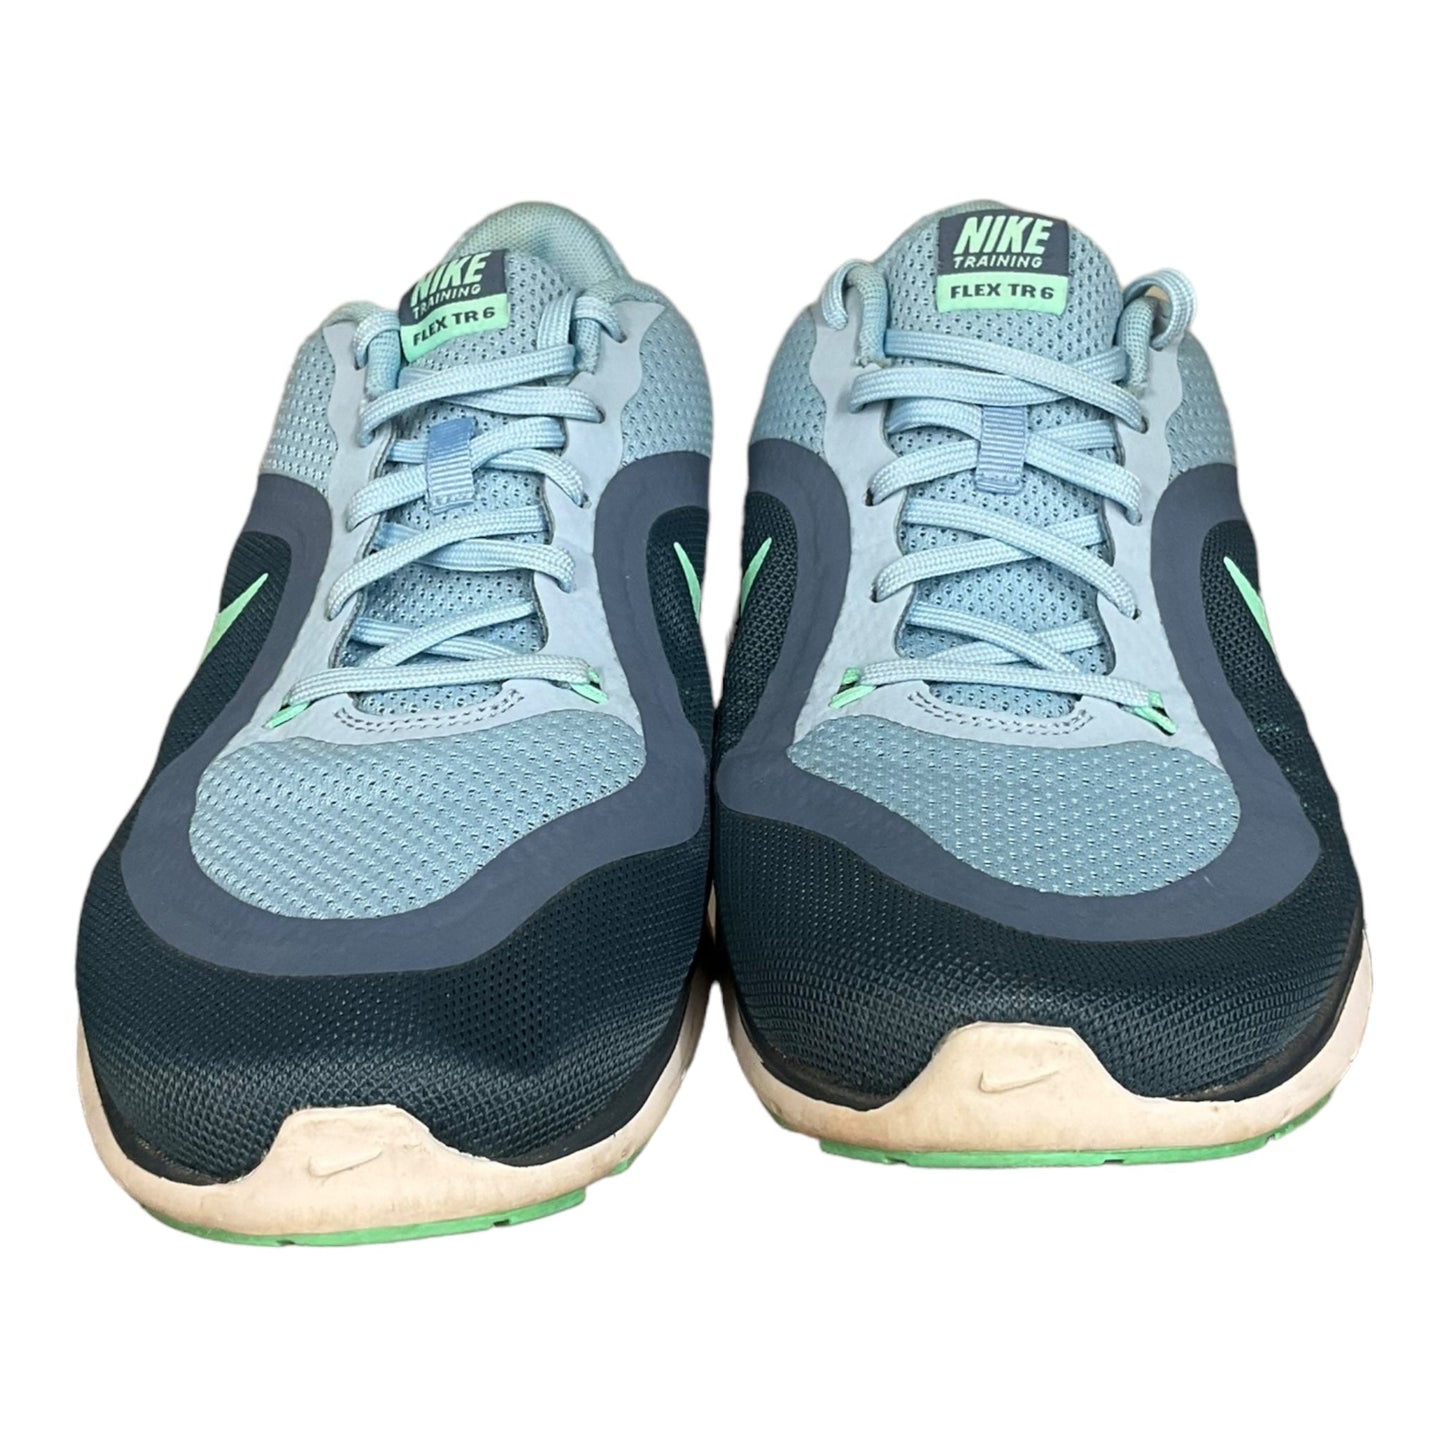 Blue Shoes Athletic Nike, Size 10